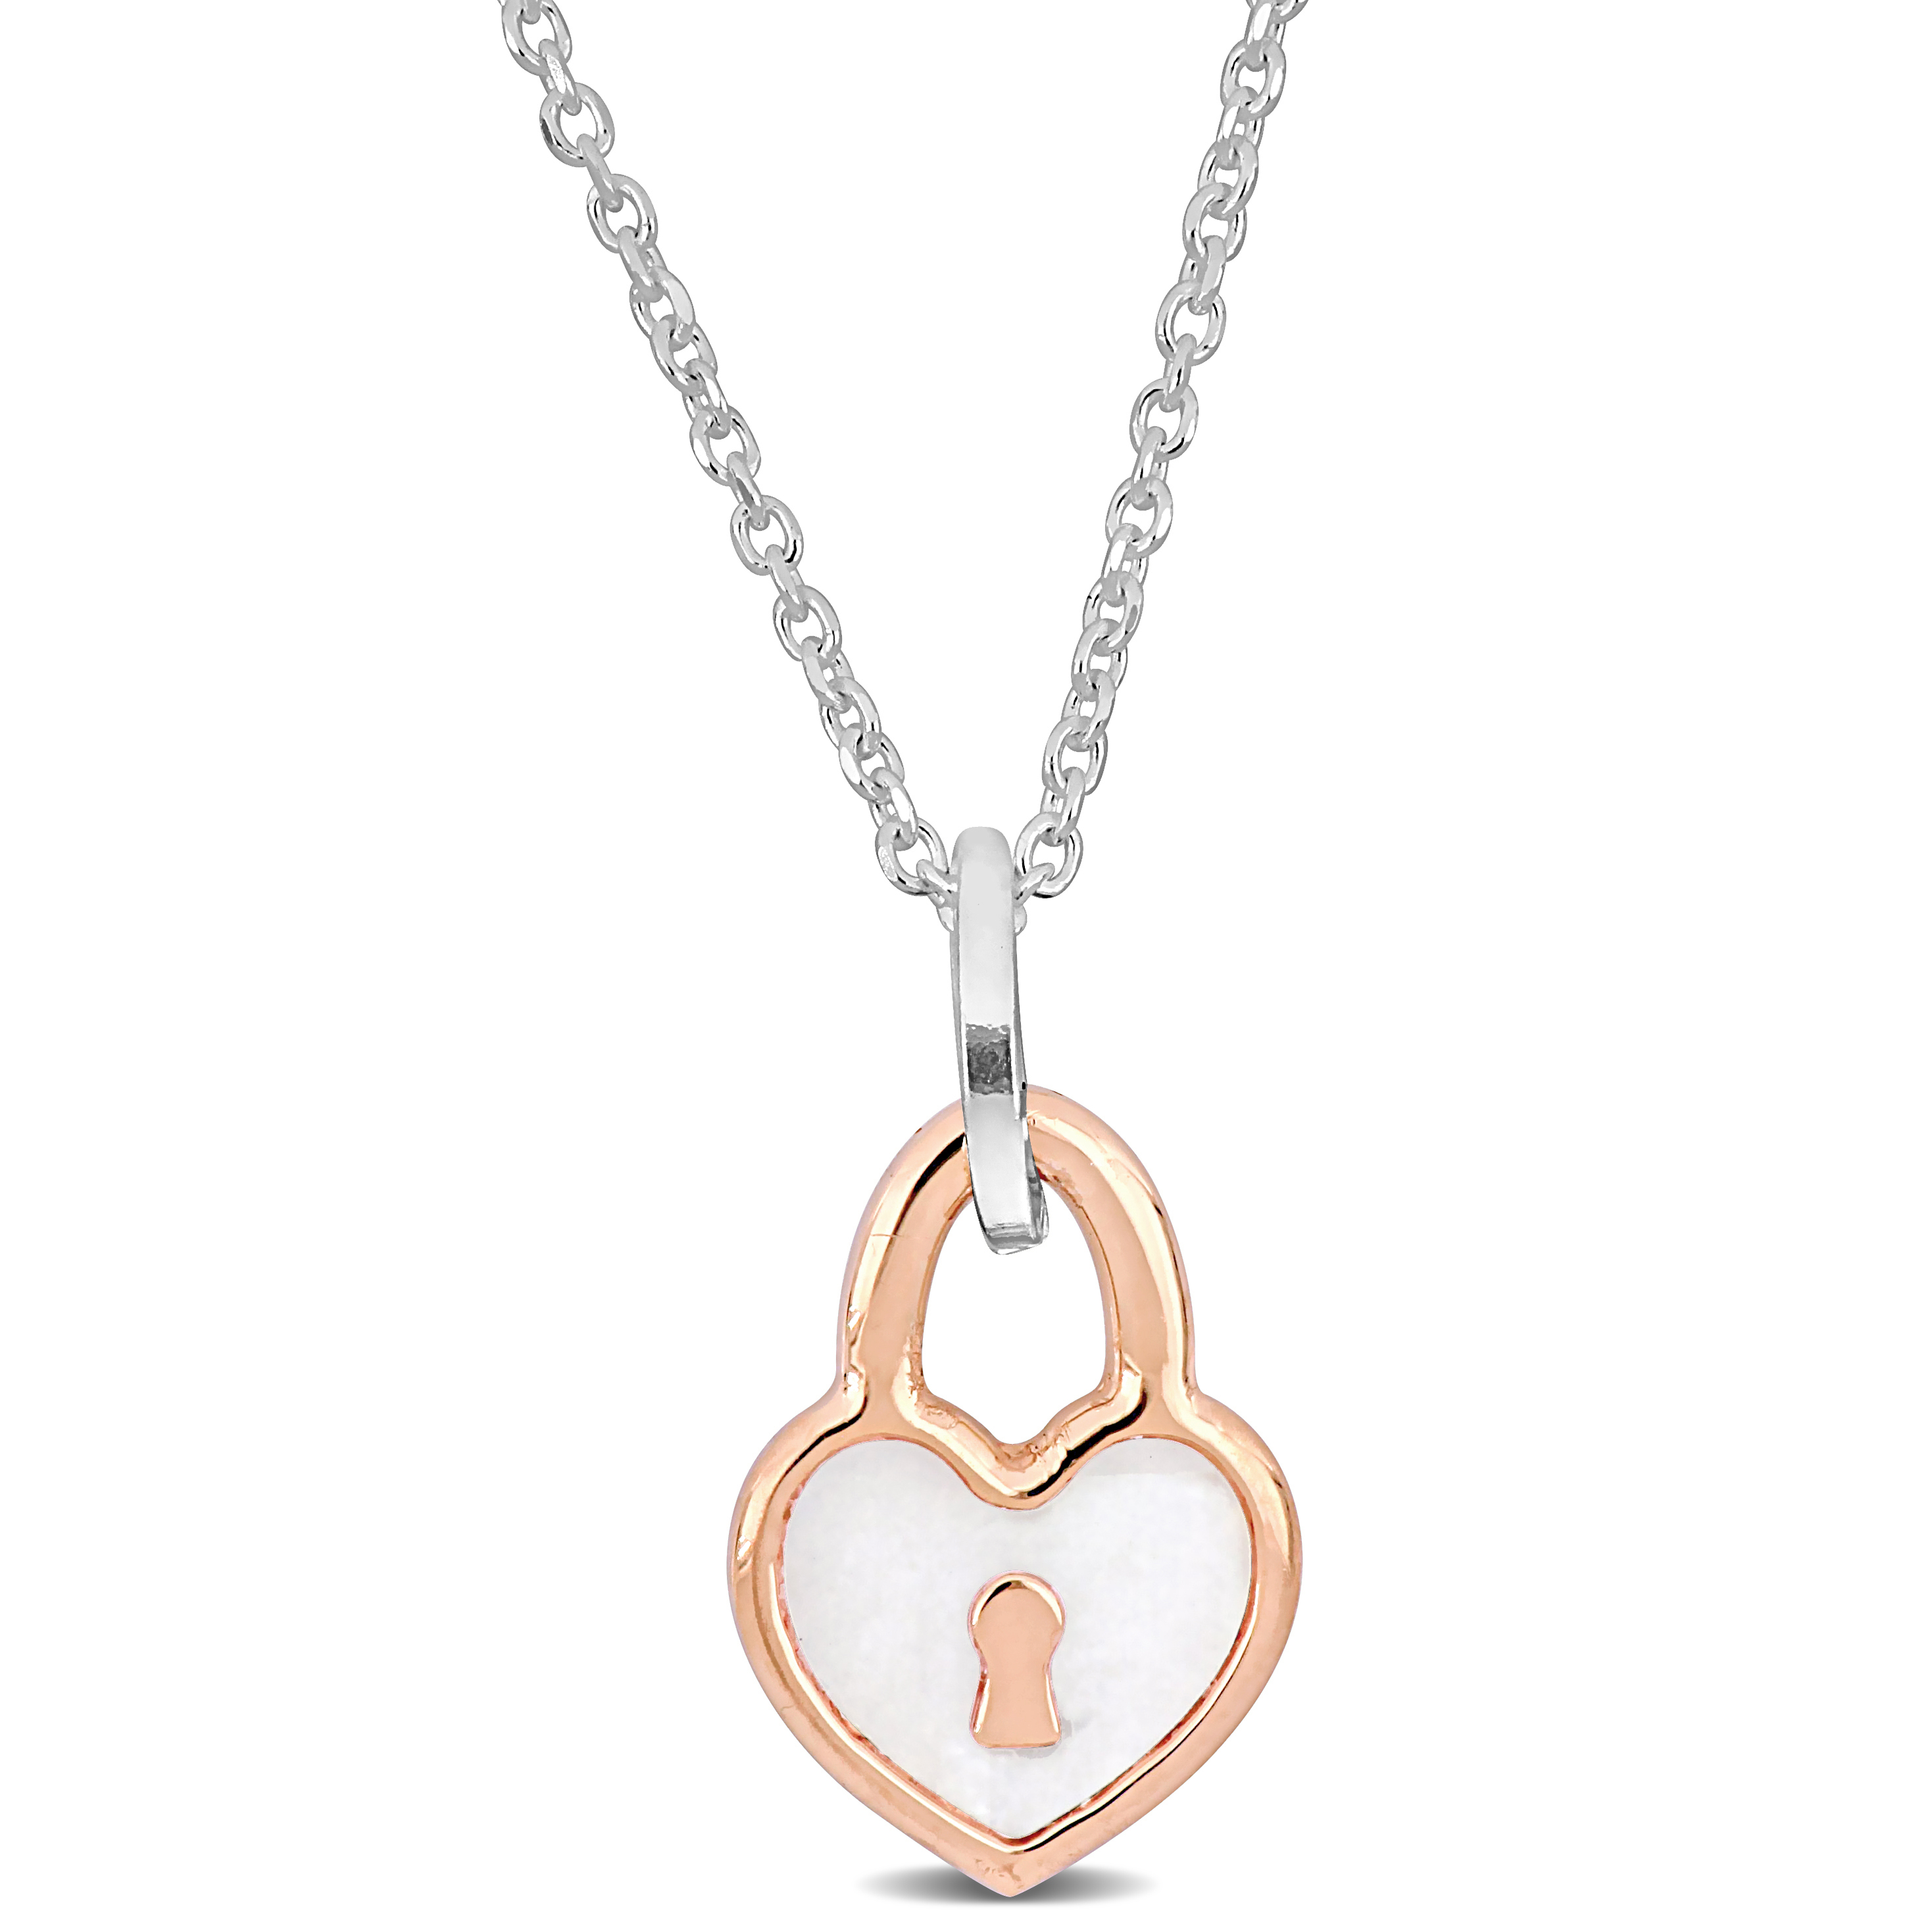 Pink Heart Lock Charm Necklace w/ White Enamel in Sterling Silver- 16+2 in.